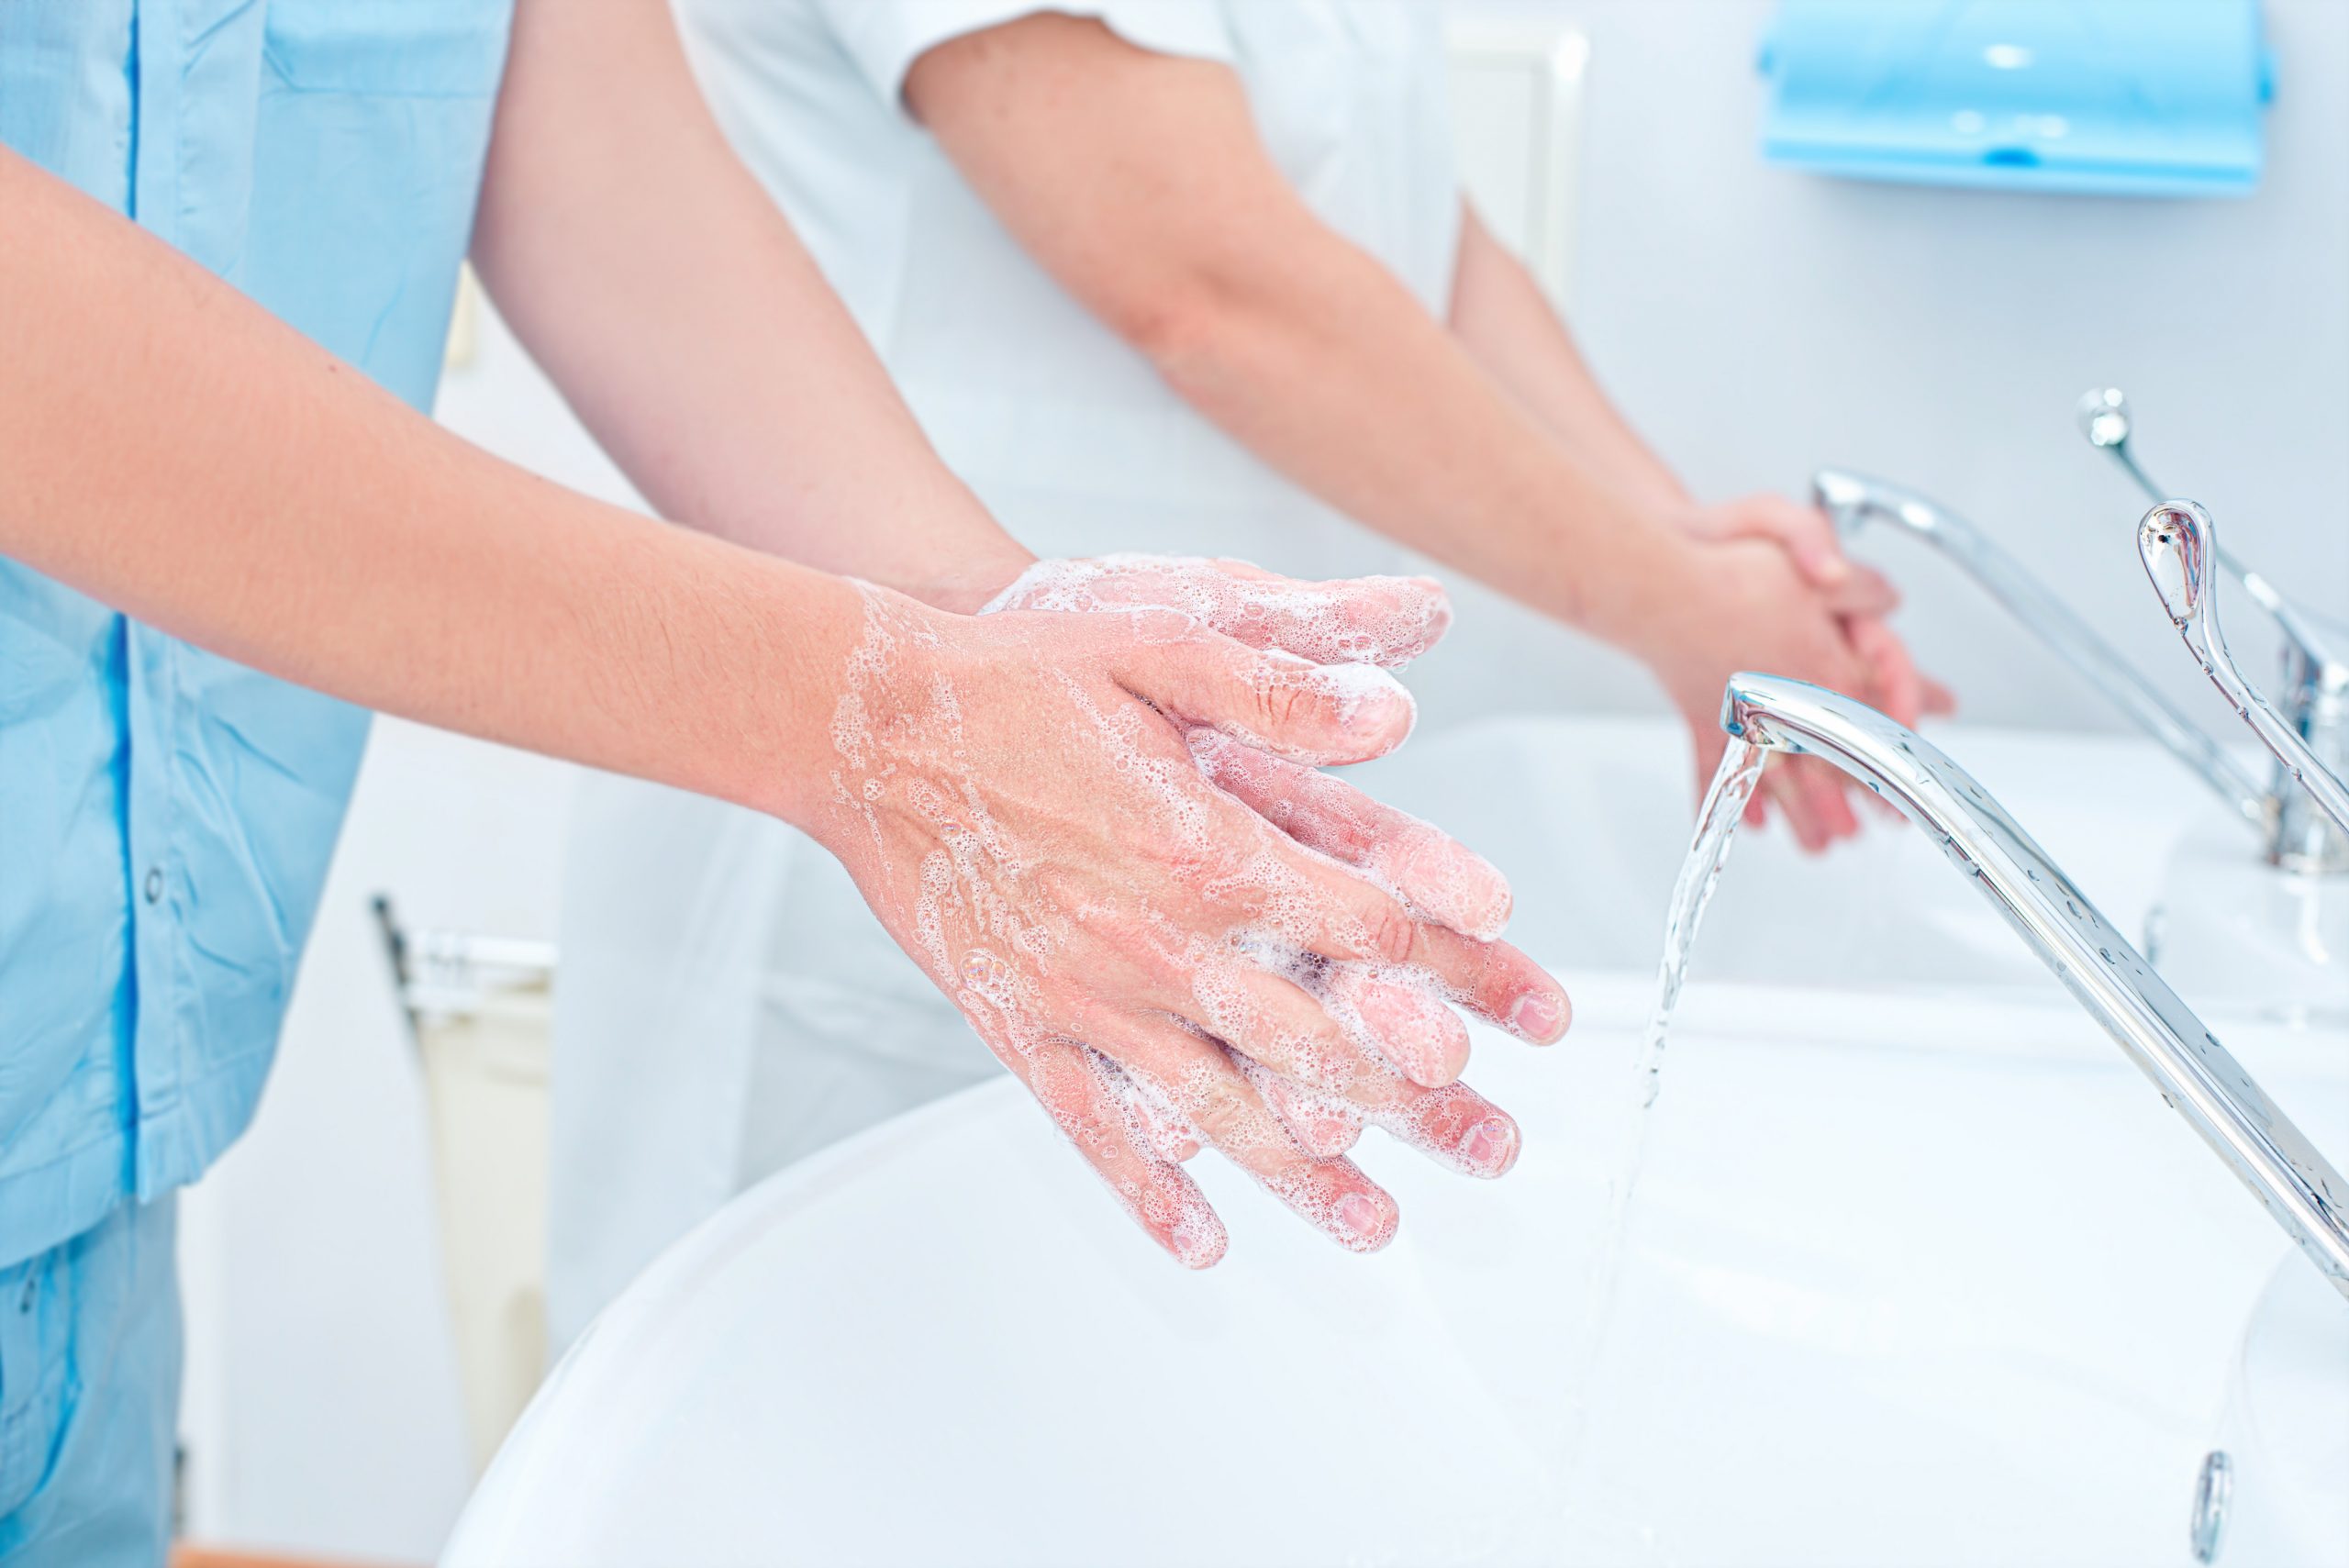 Гигиена мытья рук